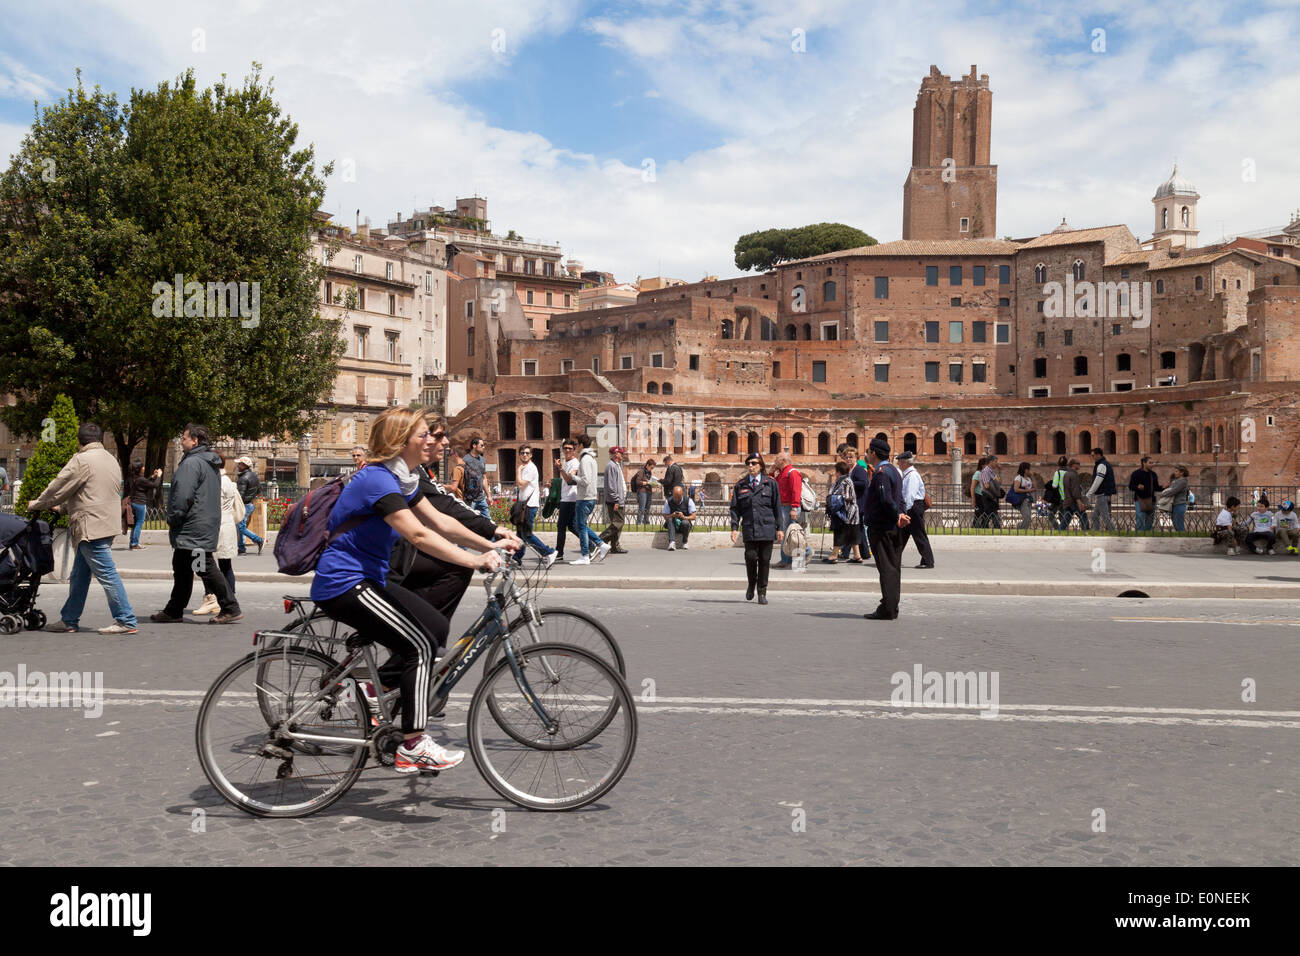 Cyclisme Italie; personnes vélo, équitation vélos, centre ville de Rome, Rome, Italie Europe Banque D'Images